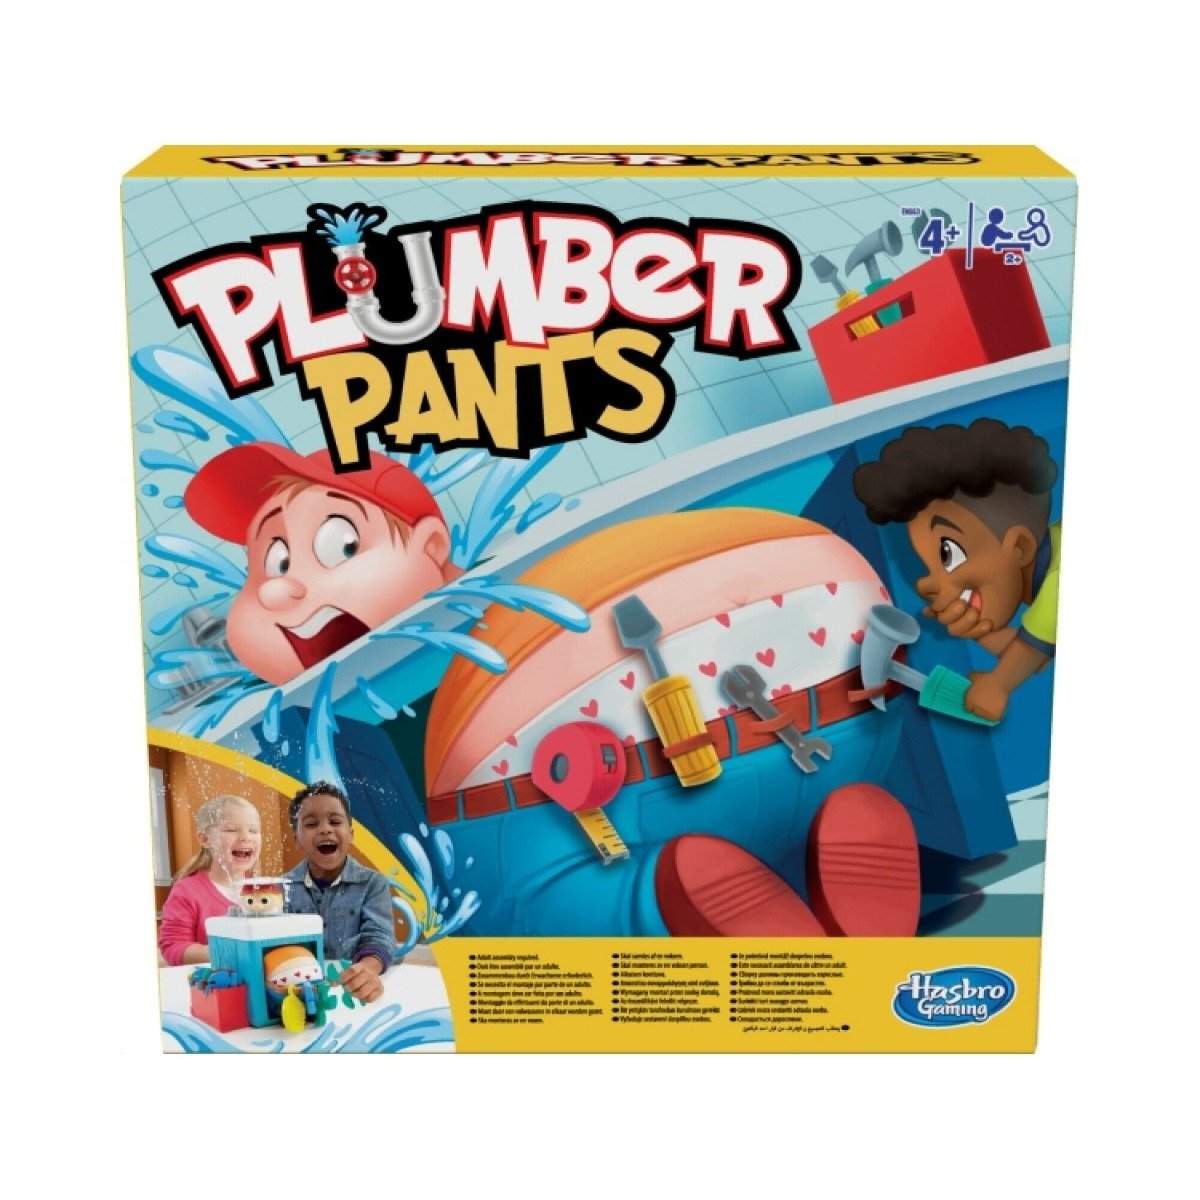 Joc Plumber Pants Hasbro Games imagine 2022 protejamcopilaria.ro